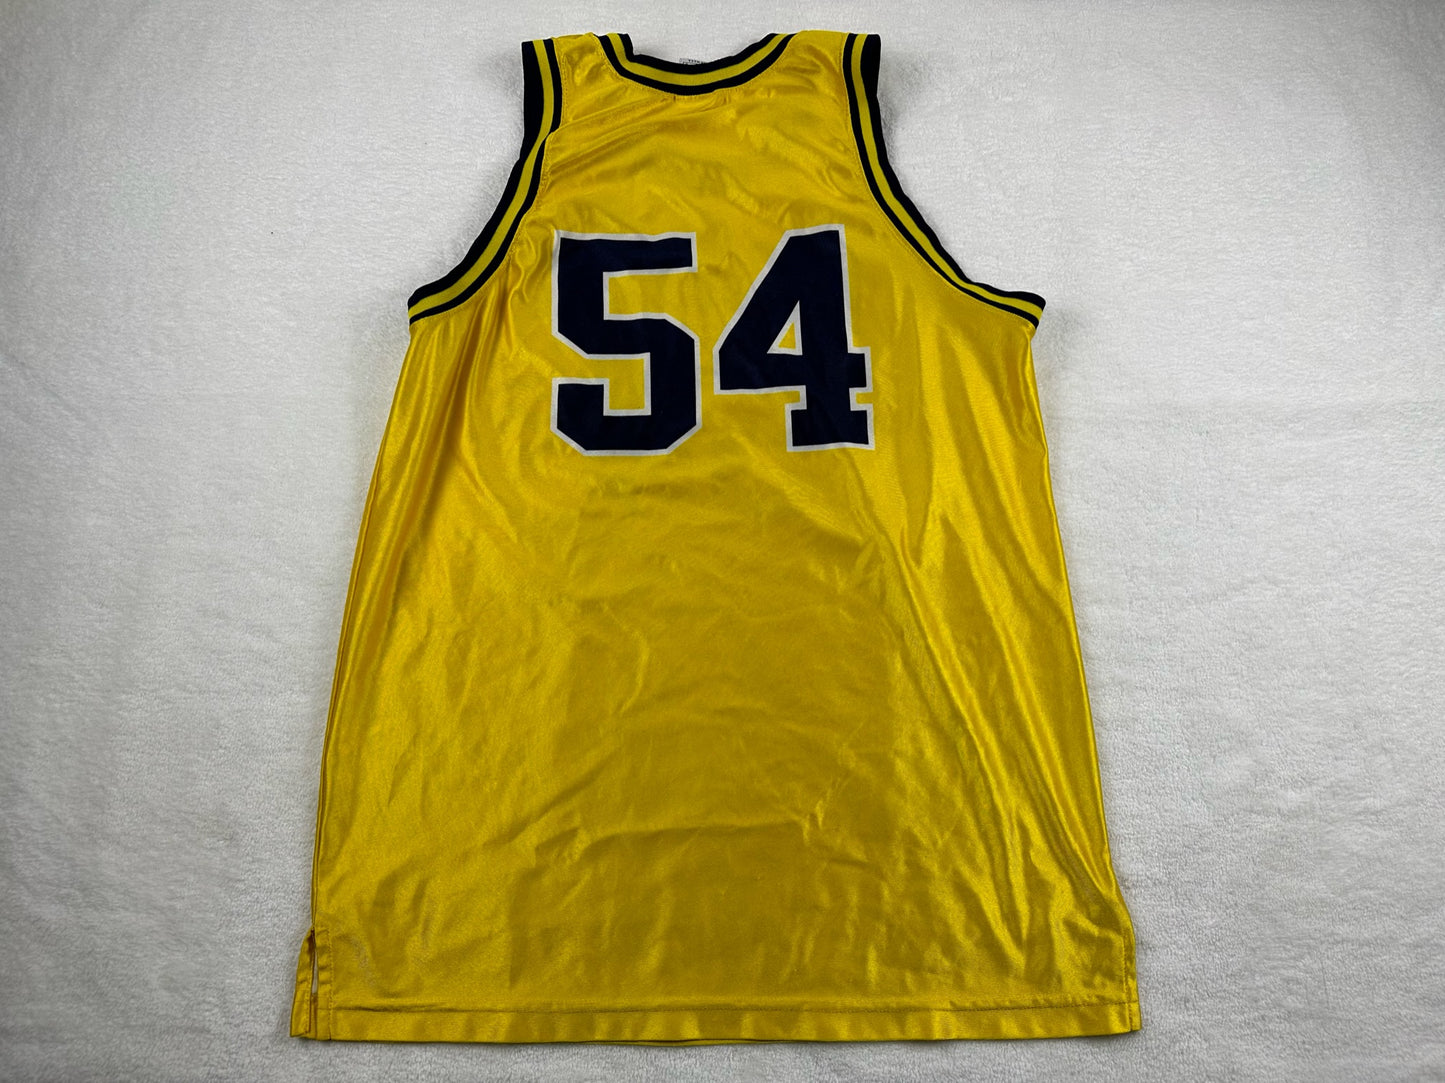 Michigan #54 Basketball Jersey